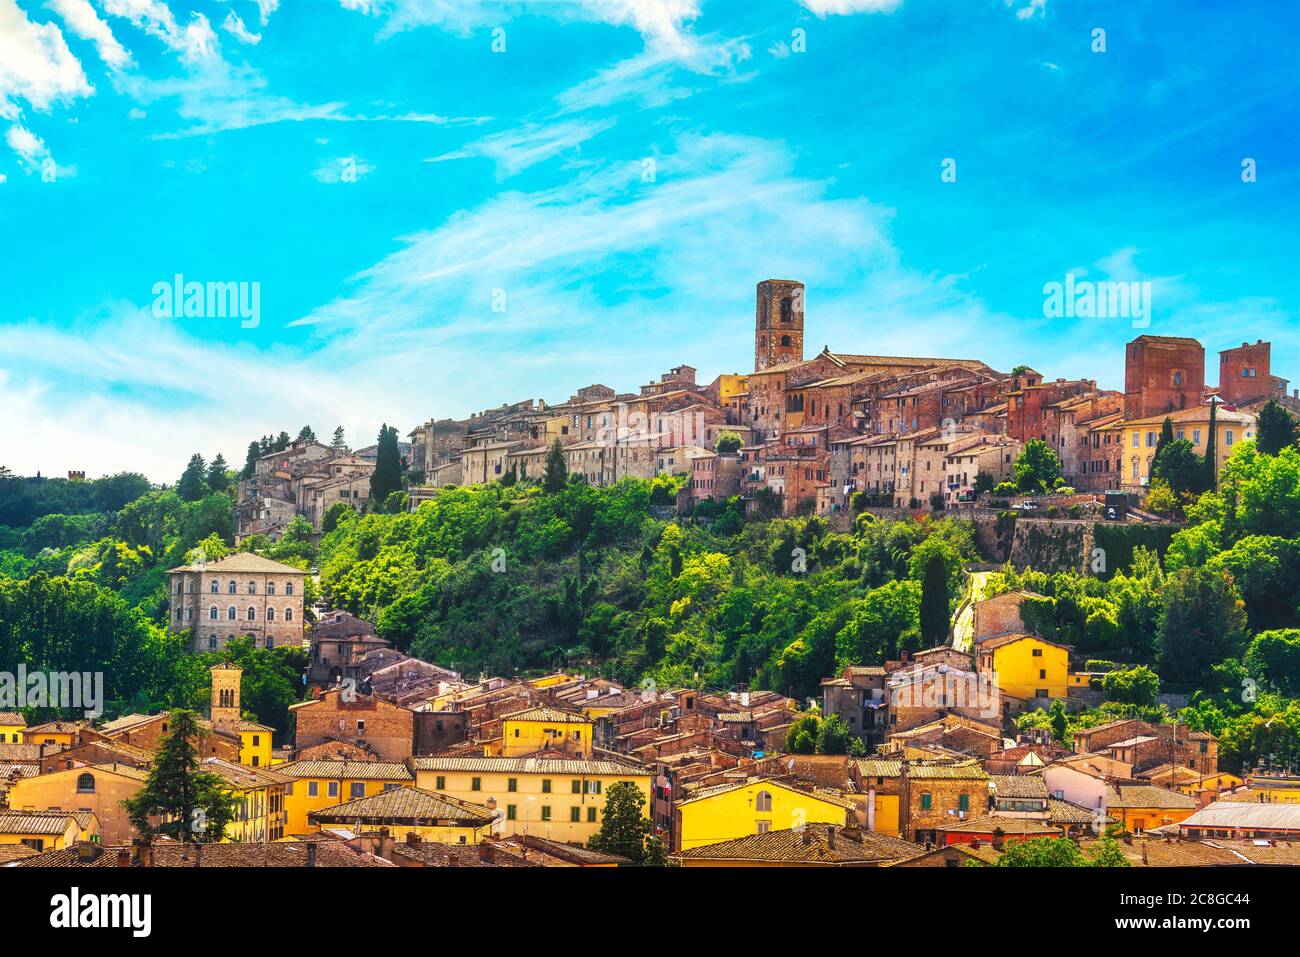 Vue panoramique sur la ville de Colle Val d'Elsa. Ville de cristal. Sienne, Toscane, Italie. Banque D'Images